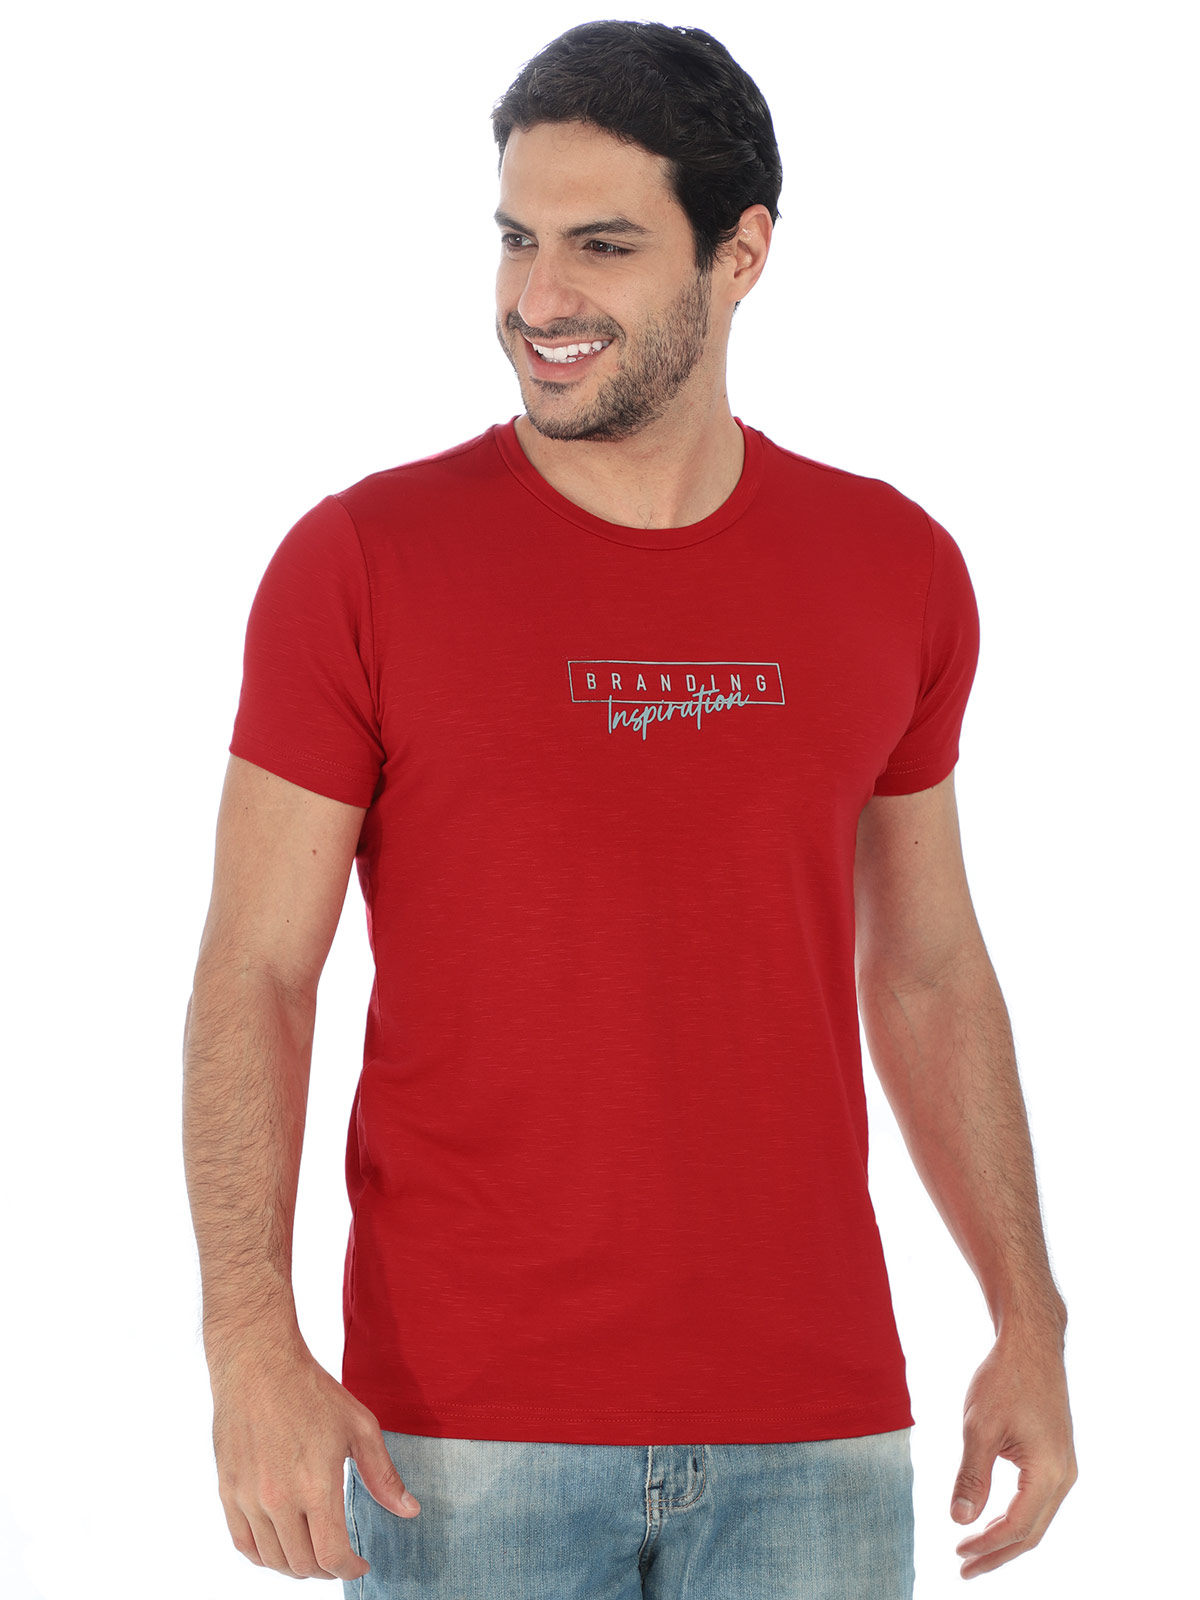 Camiseta Masculina Visco Flame Inspiration Anistia Vermelha